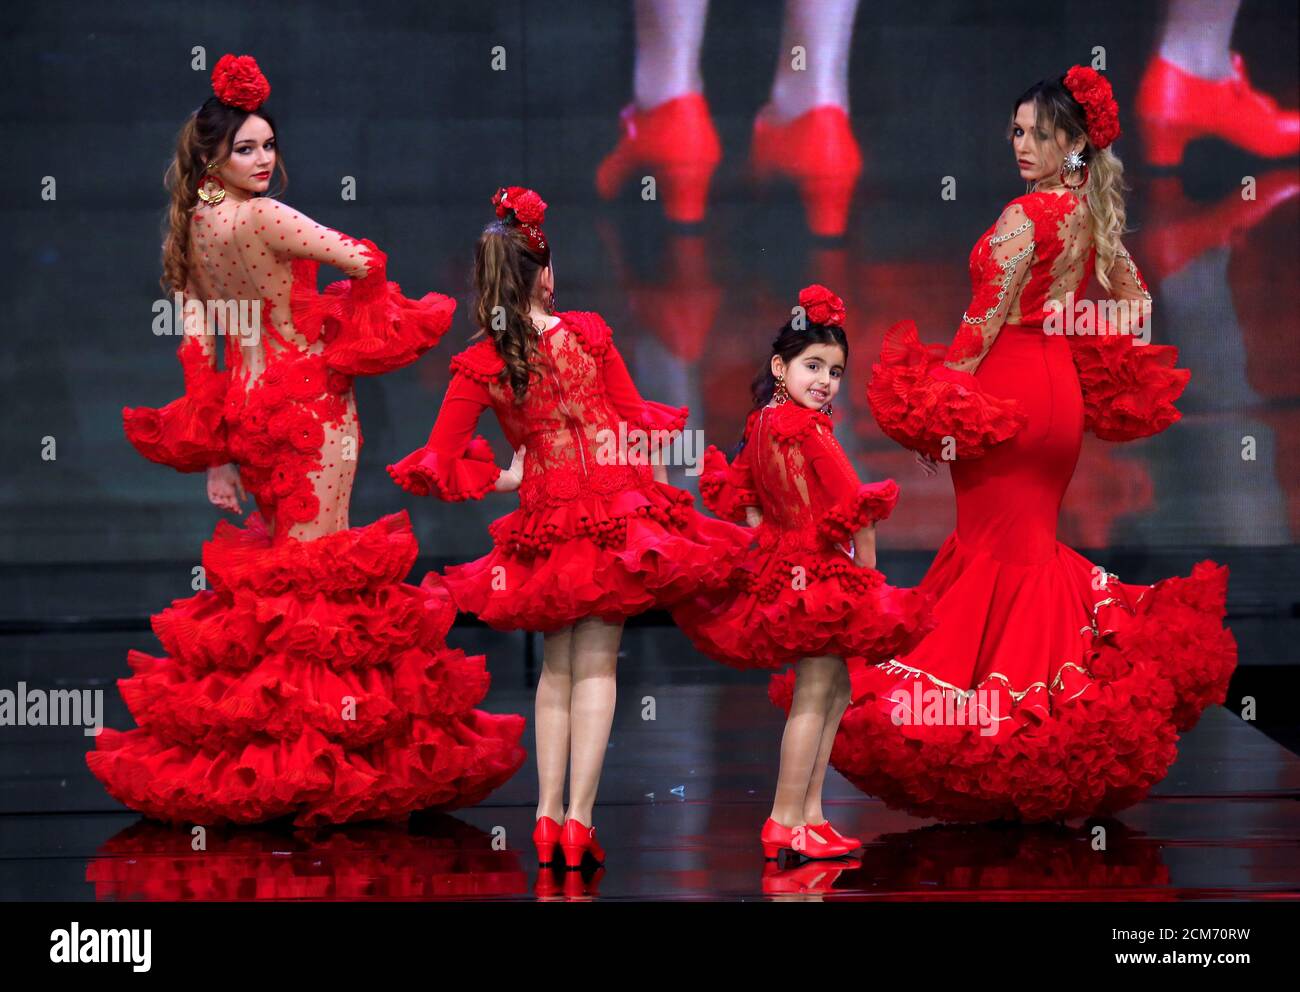 Modelli presenti creazioni di Teressa Ninu durante il Salone Internazionale della Moda di Flamenco (SIMOF) nella capitale andalusa di Siviglia, Spagna 1 febbraio 2020. REUTERS/Marcello del Pozo Foto Stock